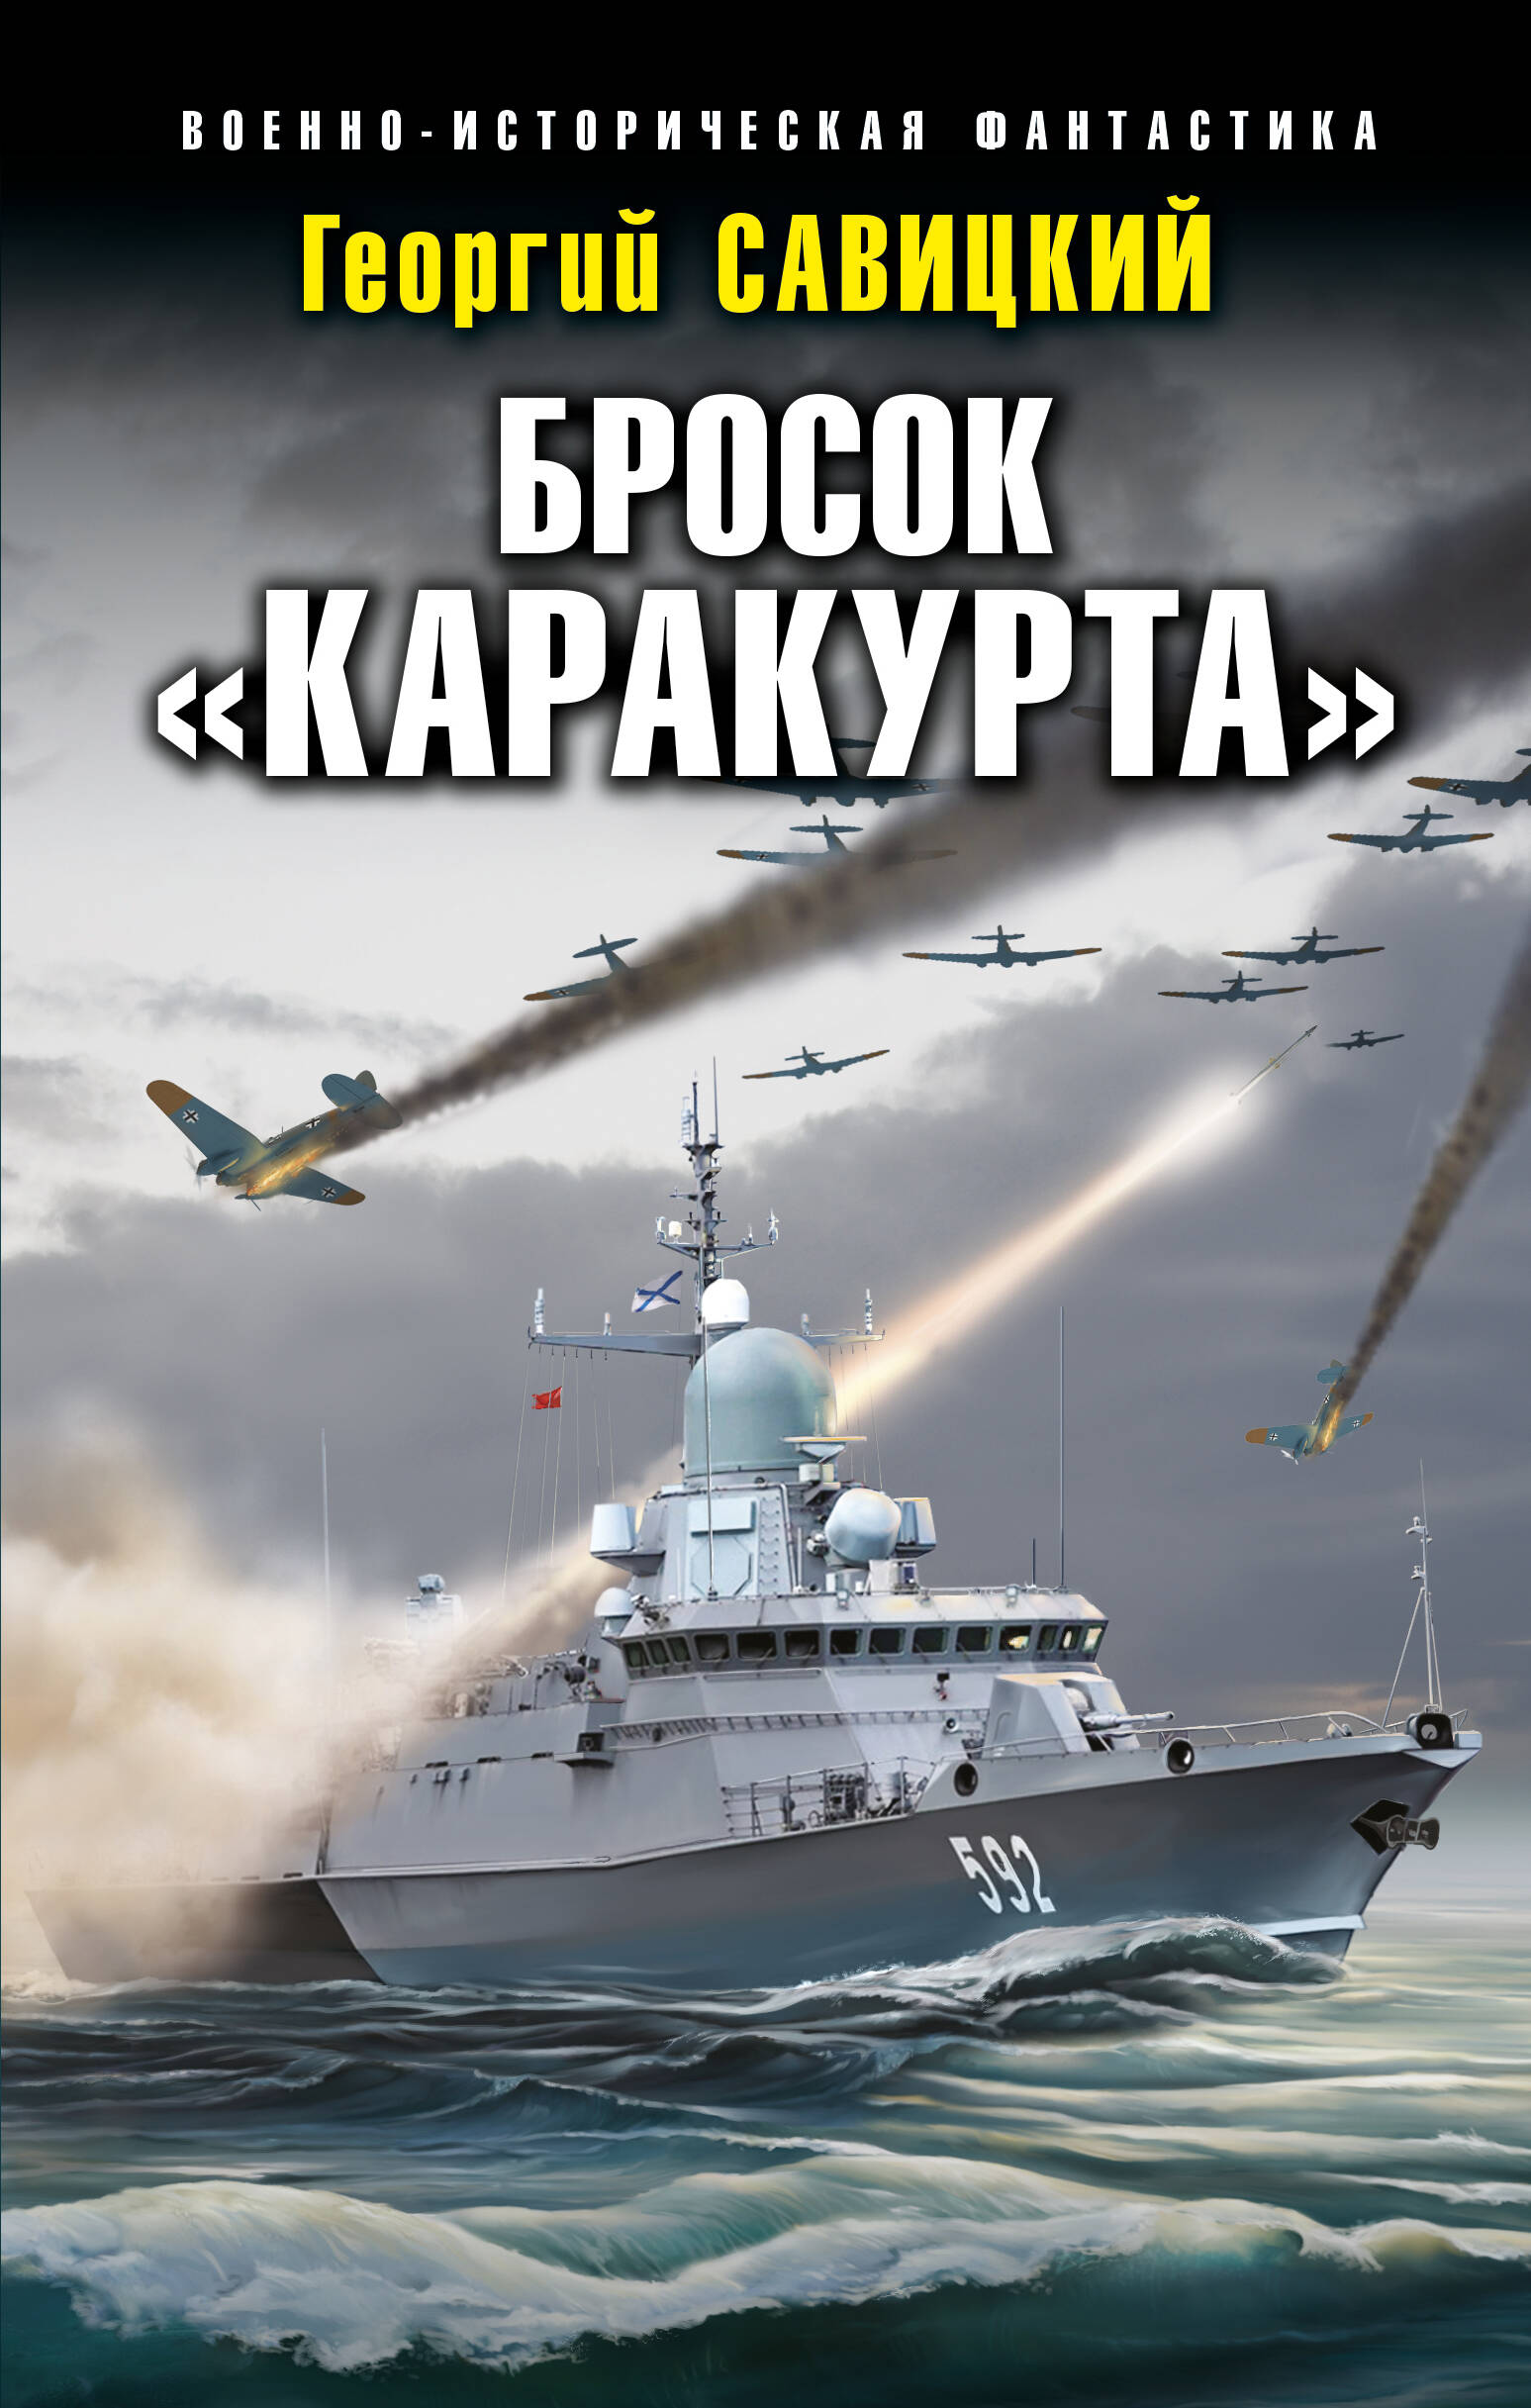 Савицкий Георгий Валериевич Бросок Каракурта дважды краснознаменный балтийский флот